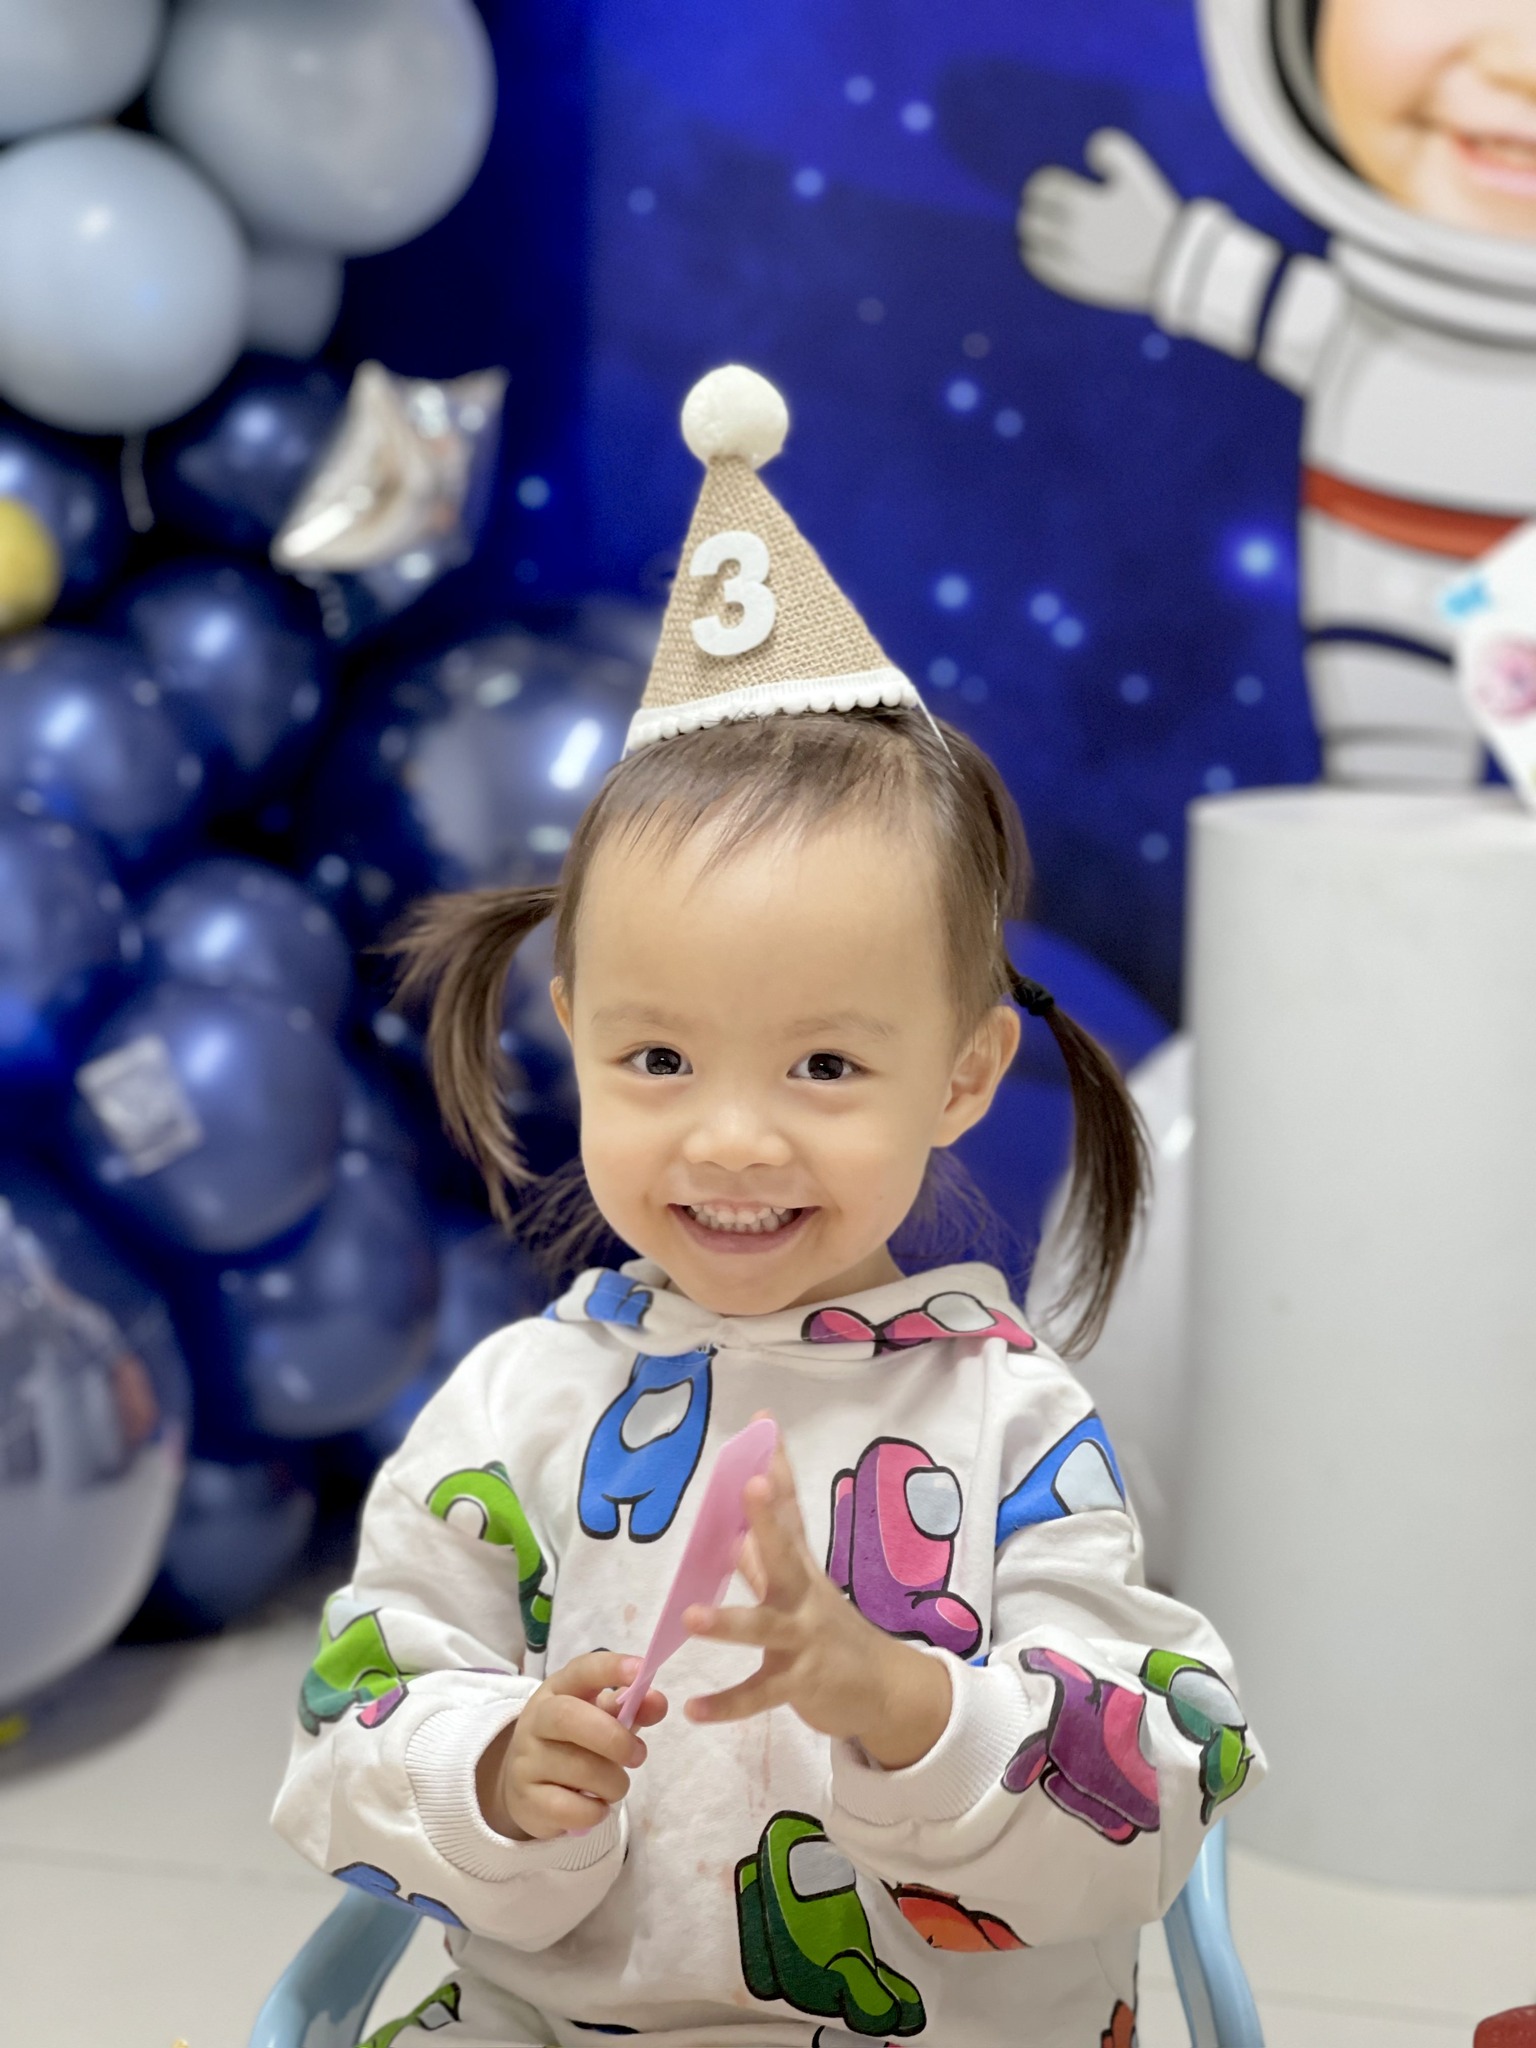 Để là trải nghiệm của chính bé, mẹ Hà Nội tổ chức sinh nhật cho con rất đặc biệt - Ảnh 1.